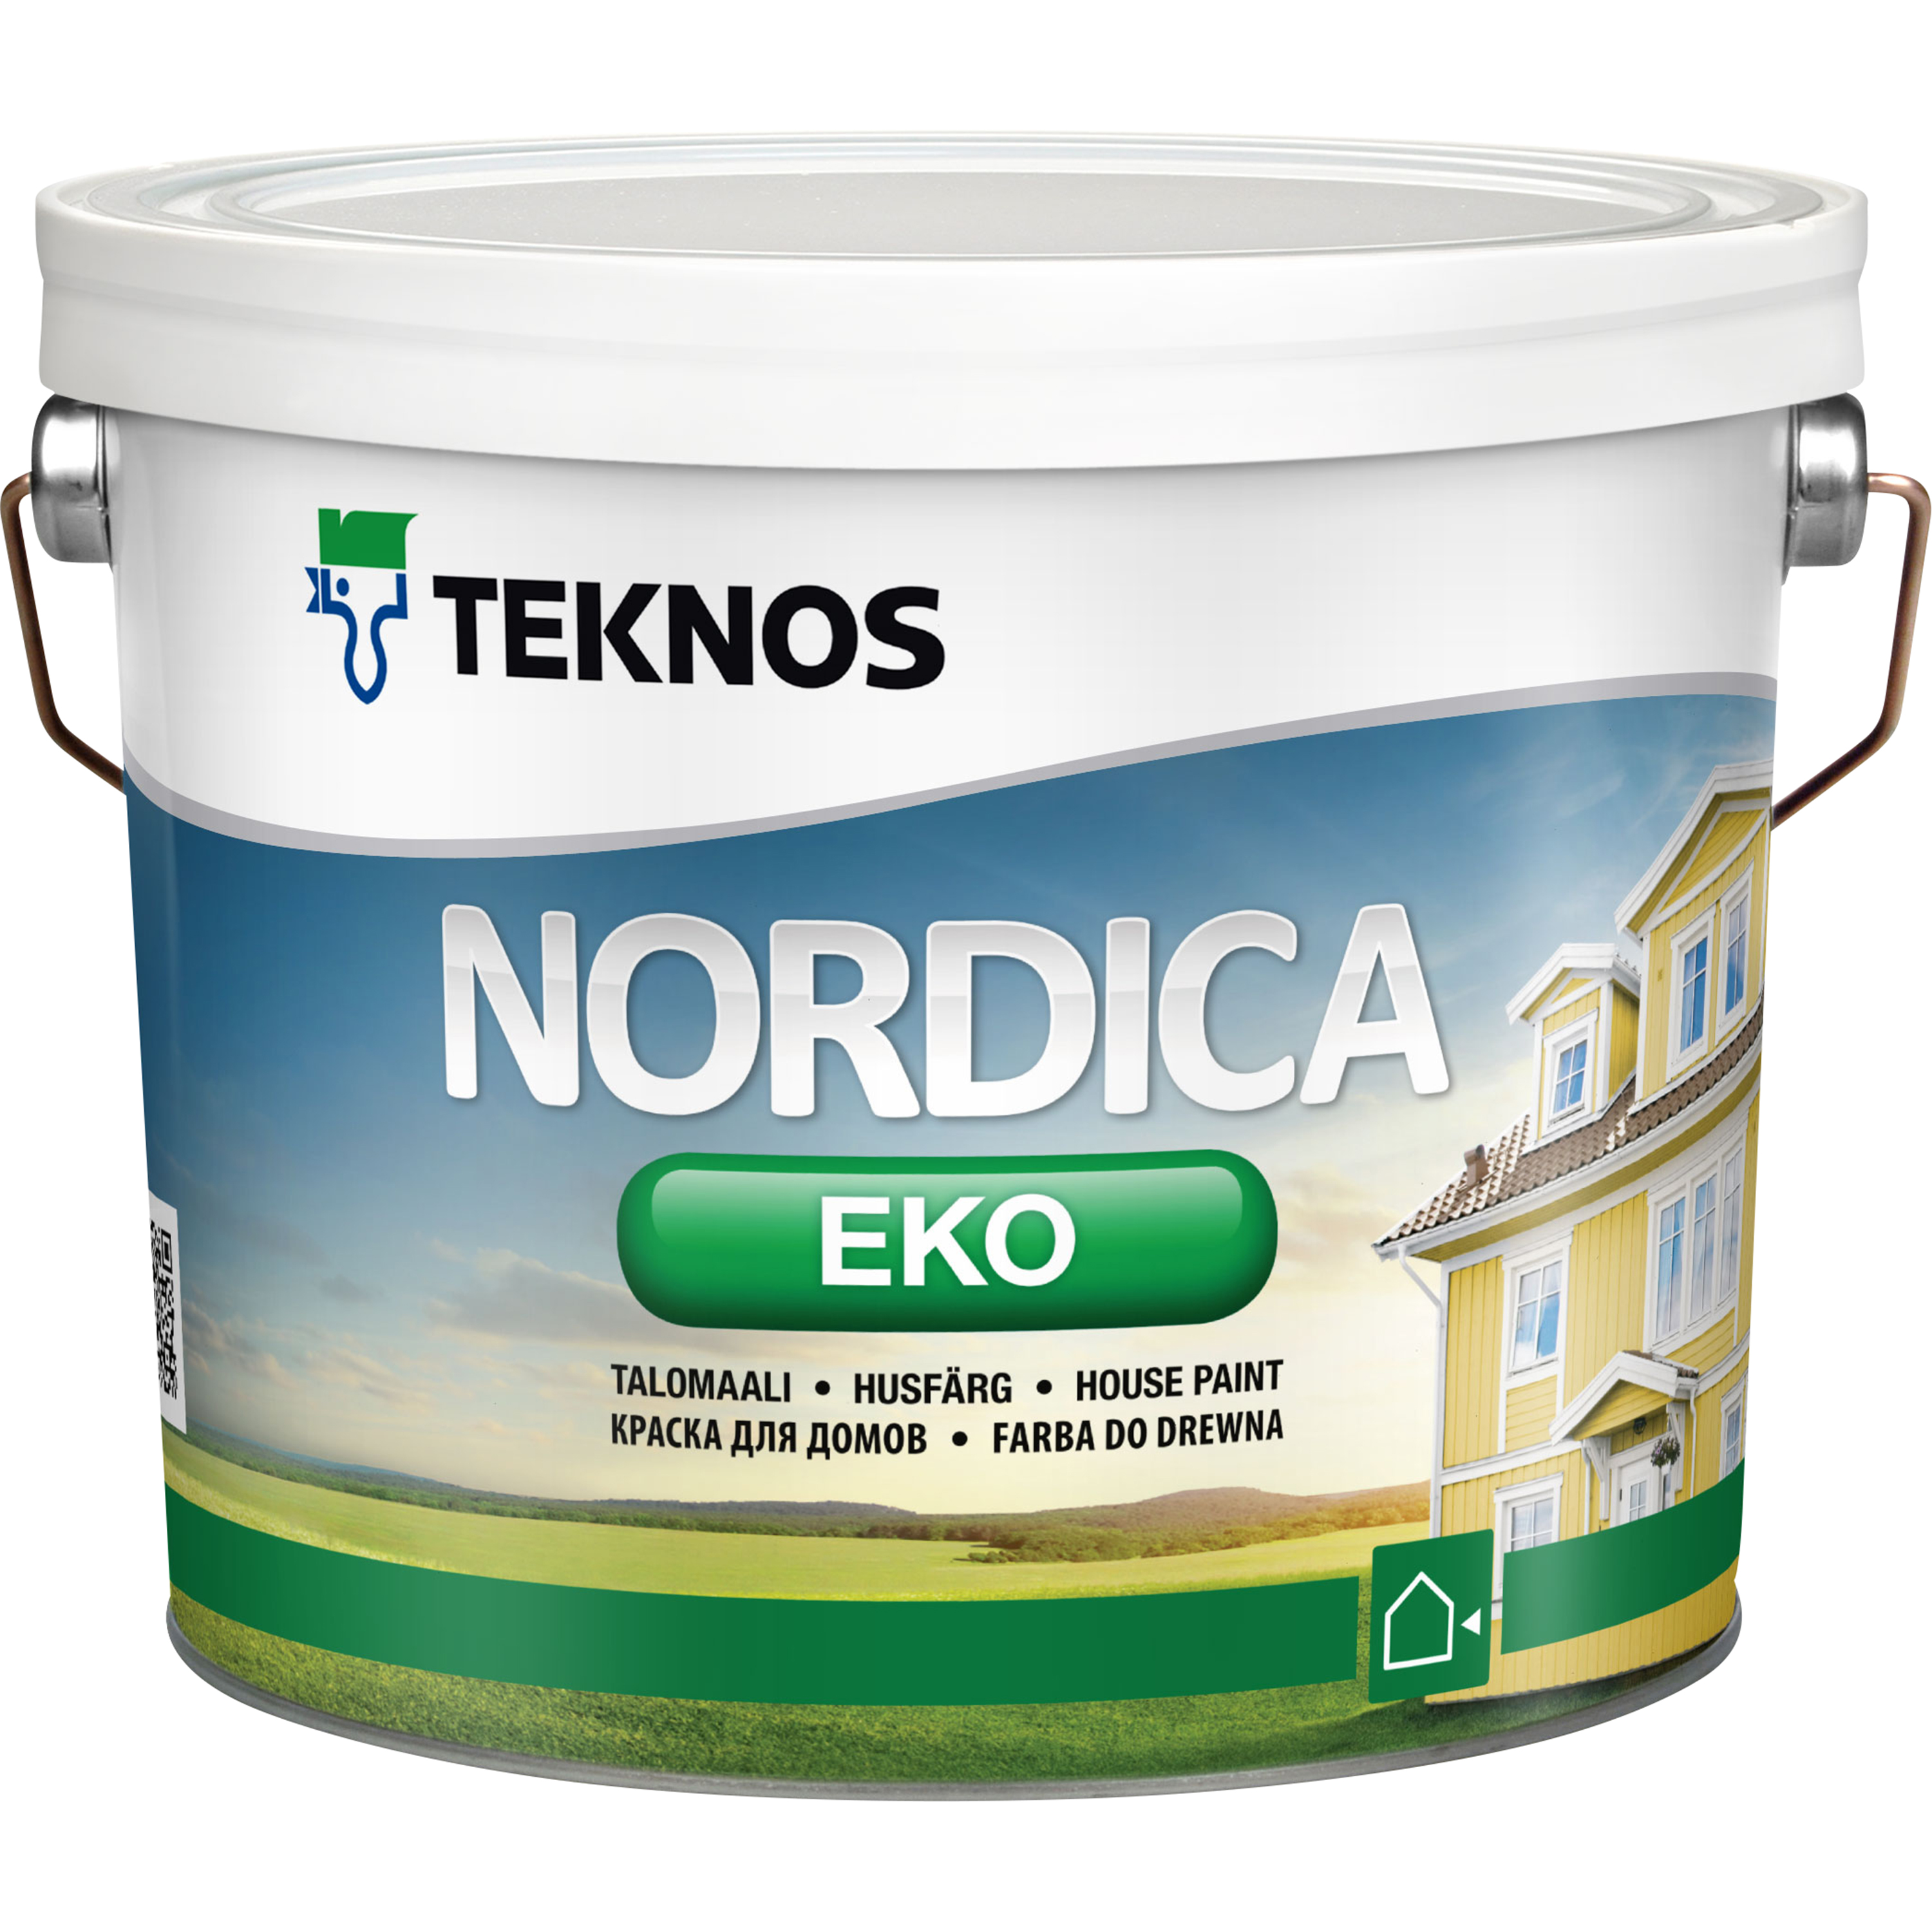 Teknos Husfärg Nordica Eko Bas 5 2,7 l